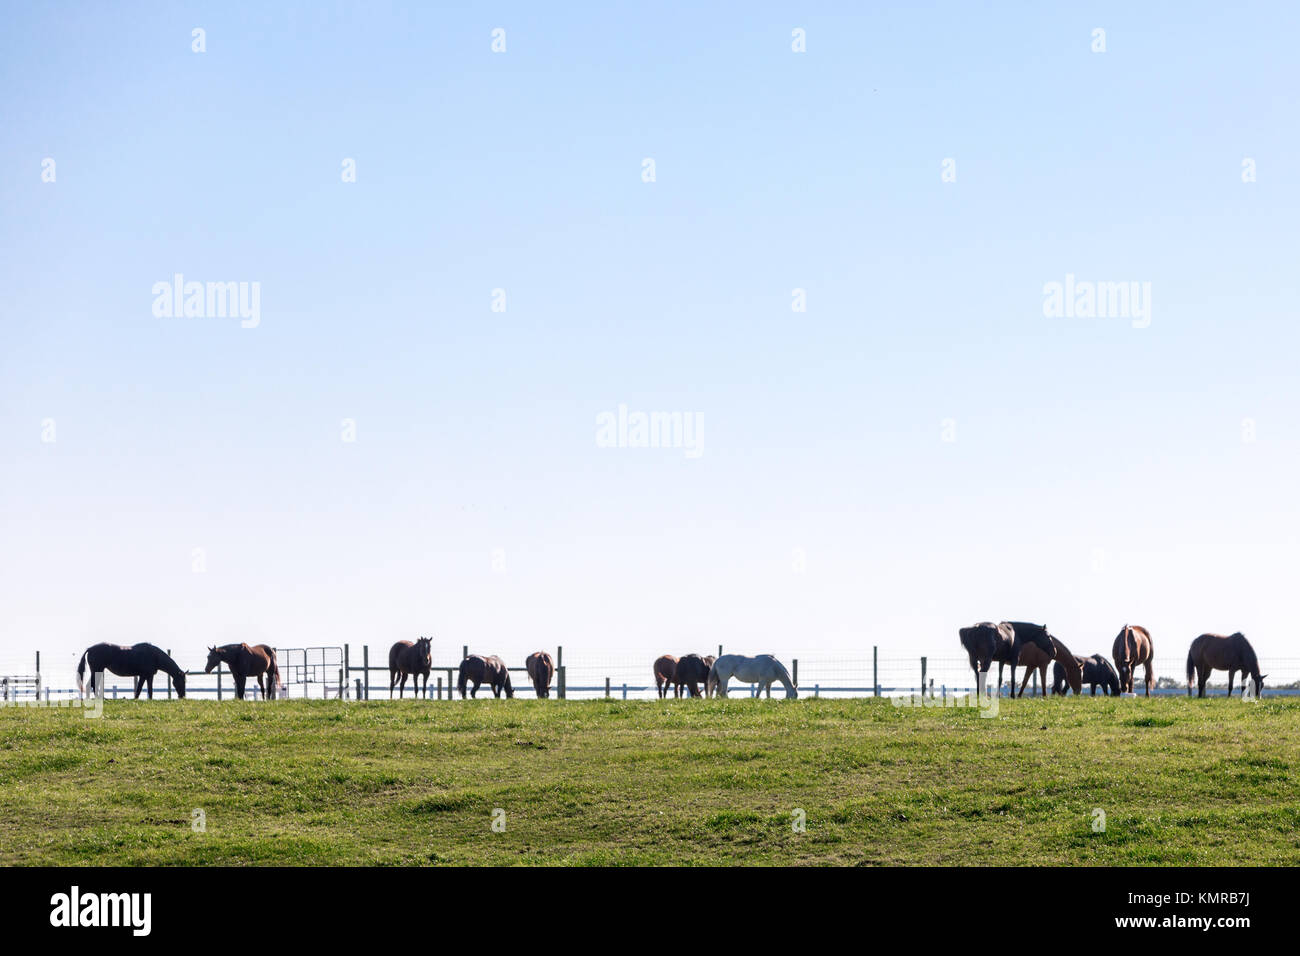 Groupe de chevaux debout dans un champ Banque D'Images